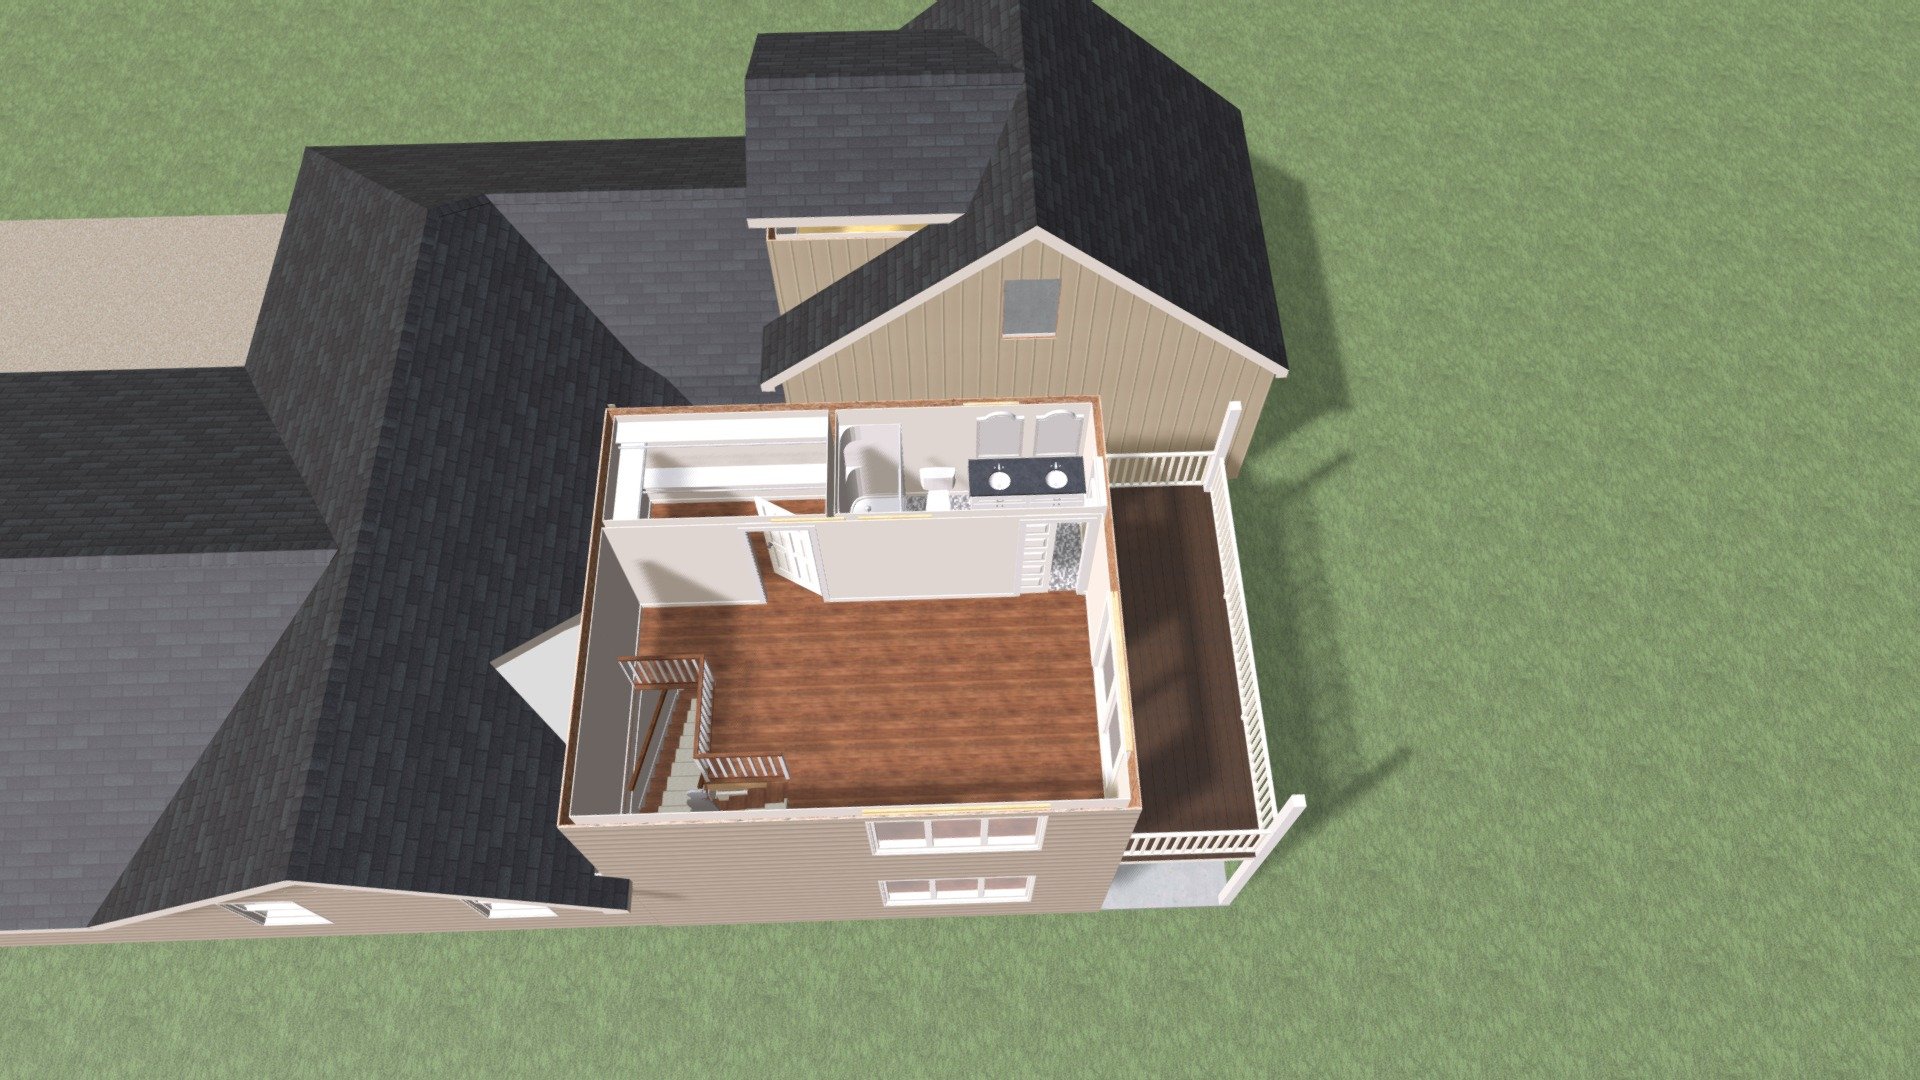 Idea 2 2nd Floor - Idea 2 2nd Floor - Download Free 3D model by OakBridge Development (@oakbridge) 3d model